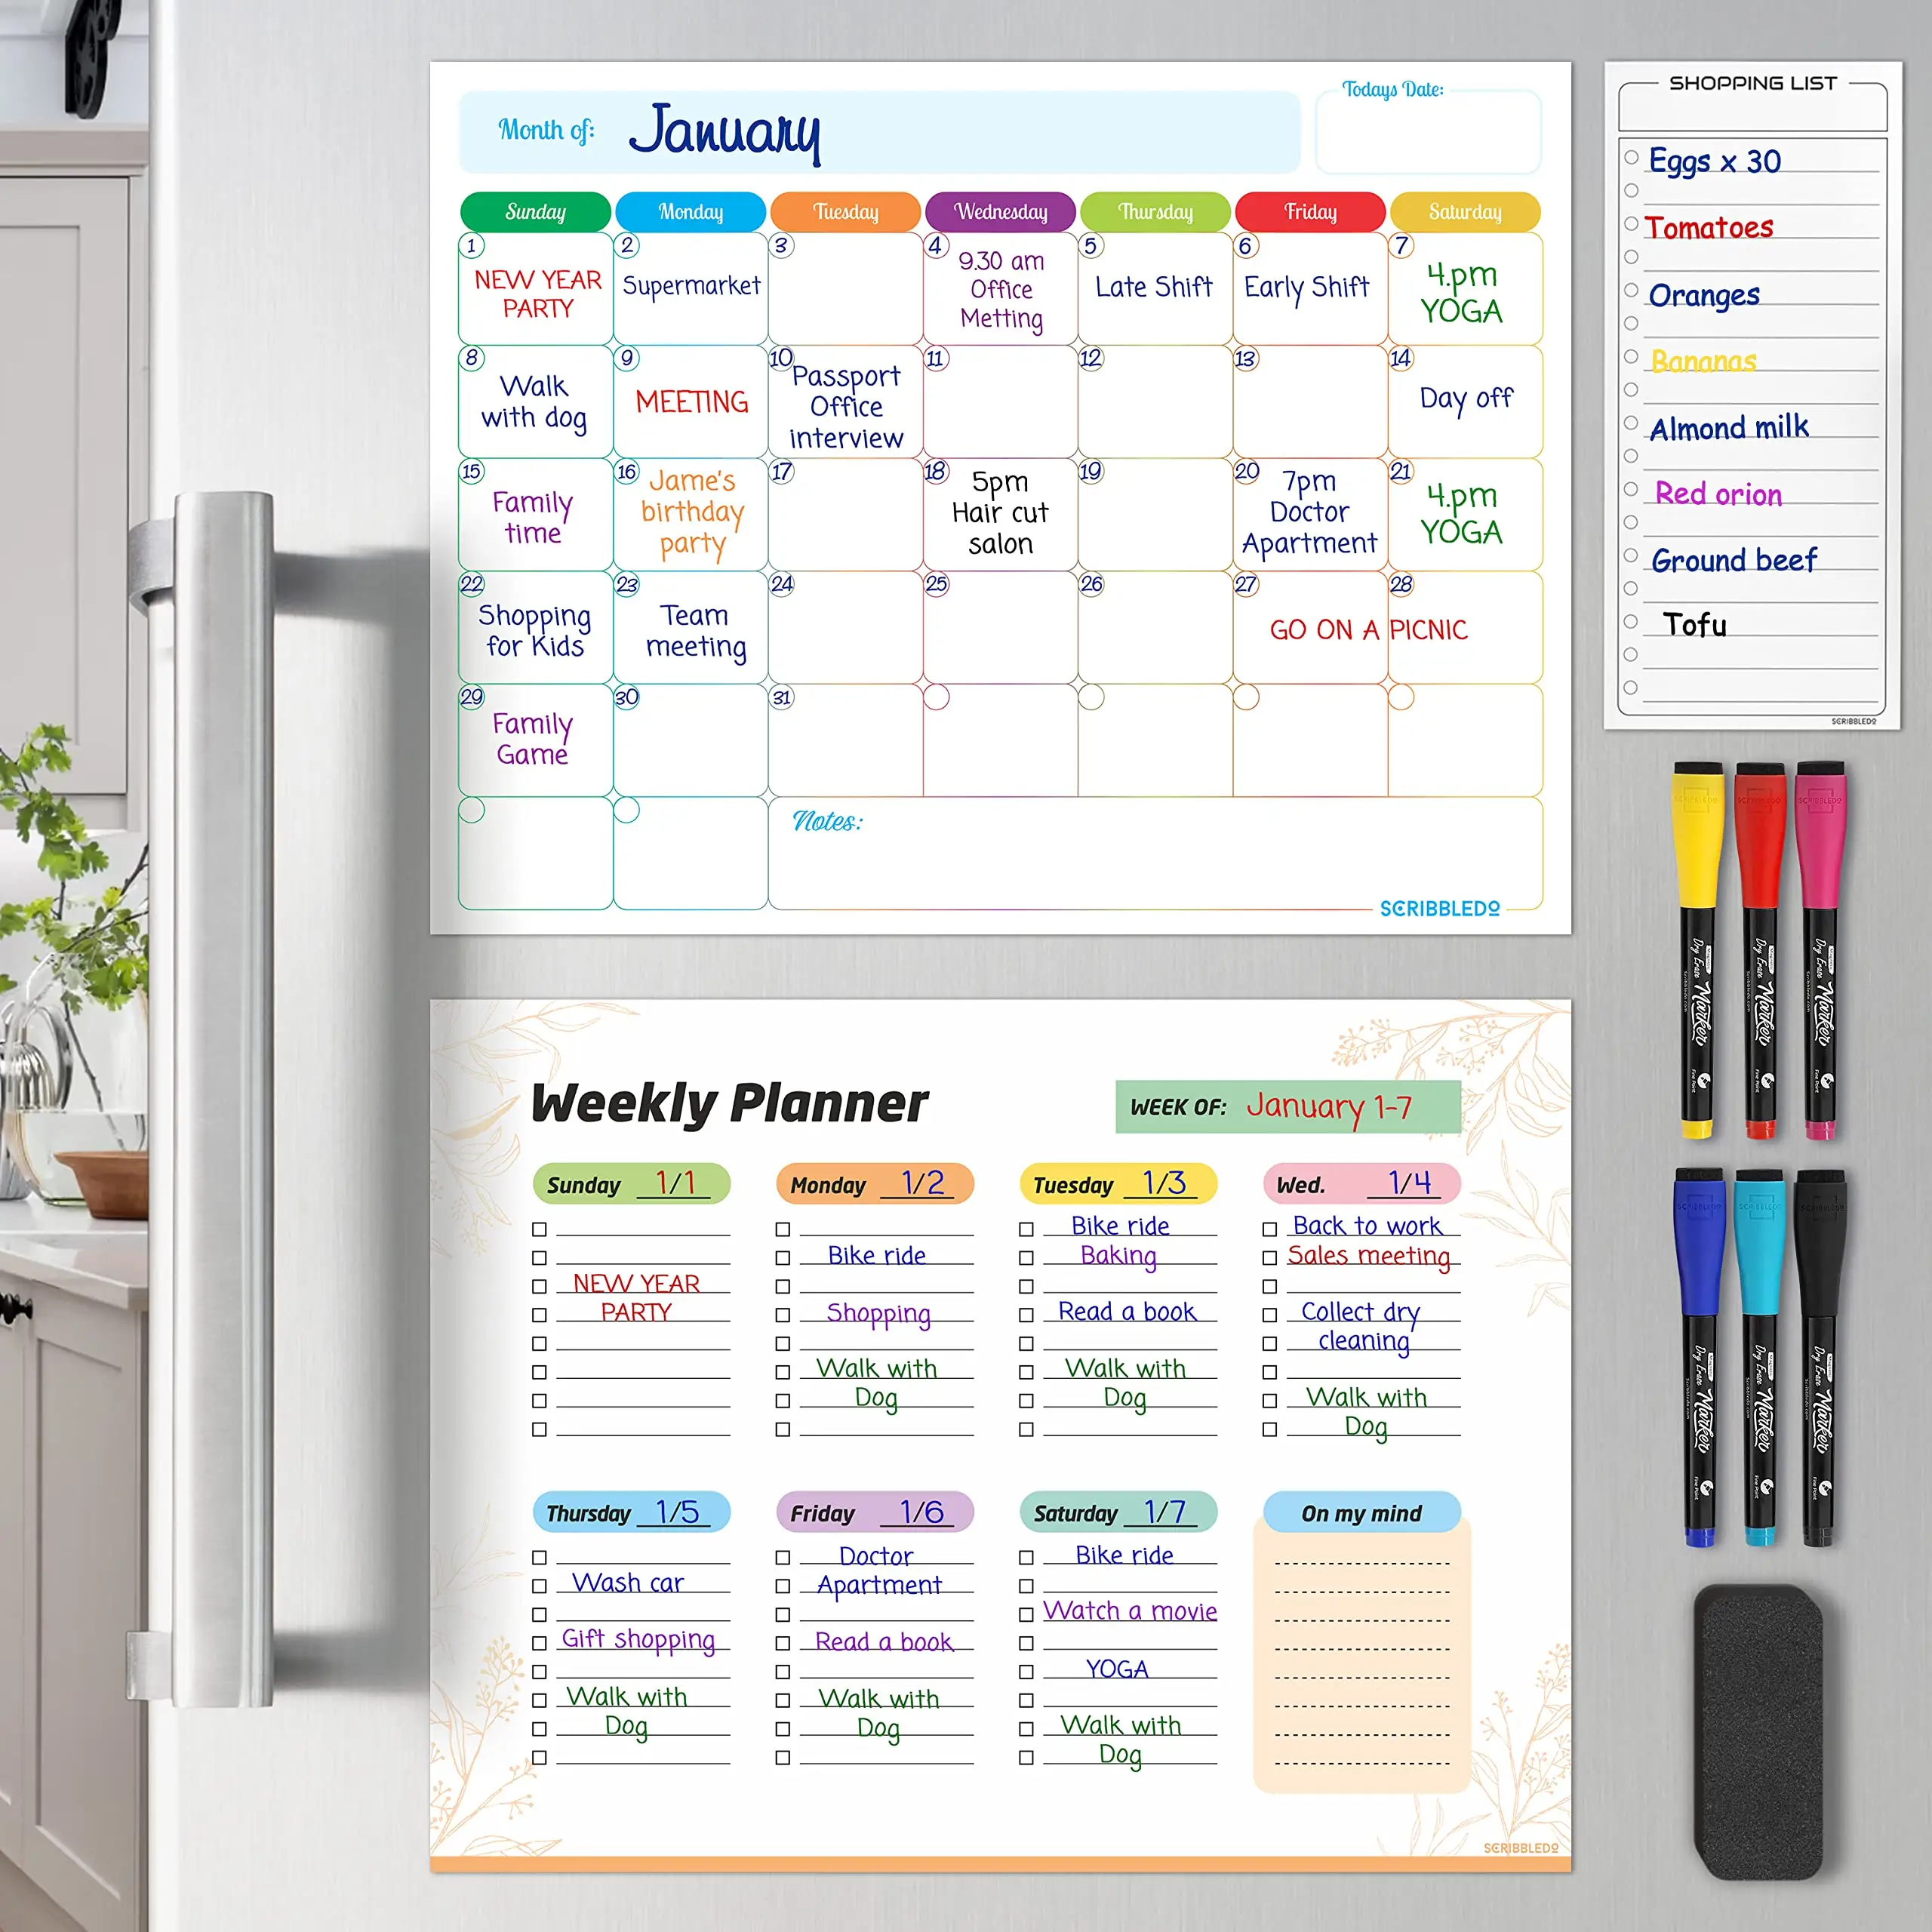 Aile ofis okul manyetik beyaz tahta için liste yapmak için özel buzdolabı mıknatısları kuru silme haftalık aylık planlayıcısı alışveriş bakkal